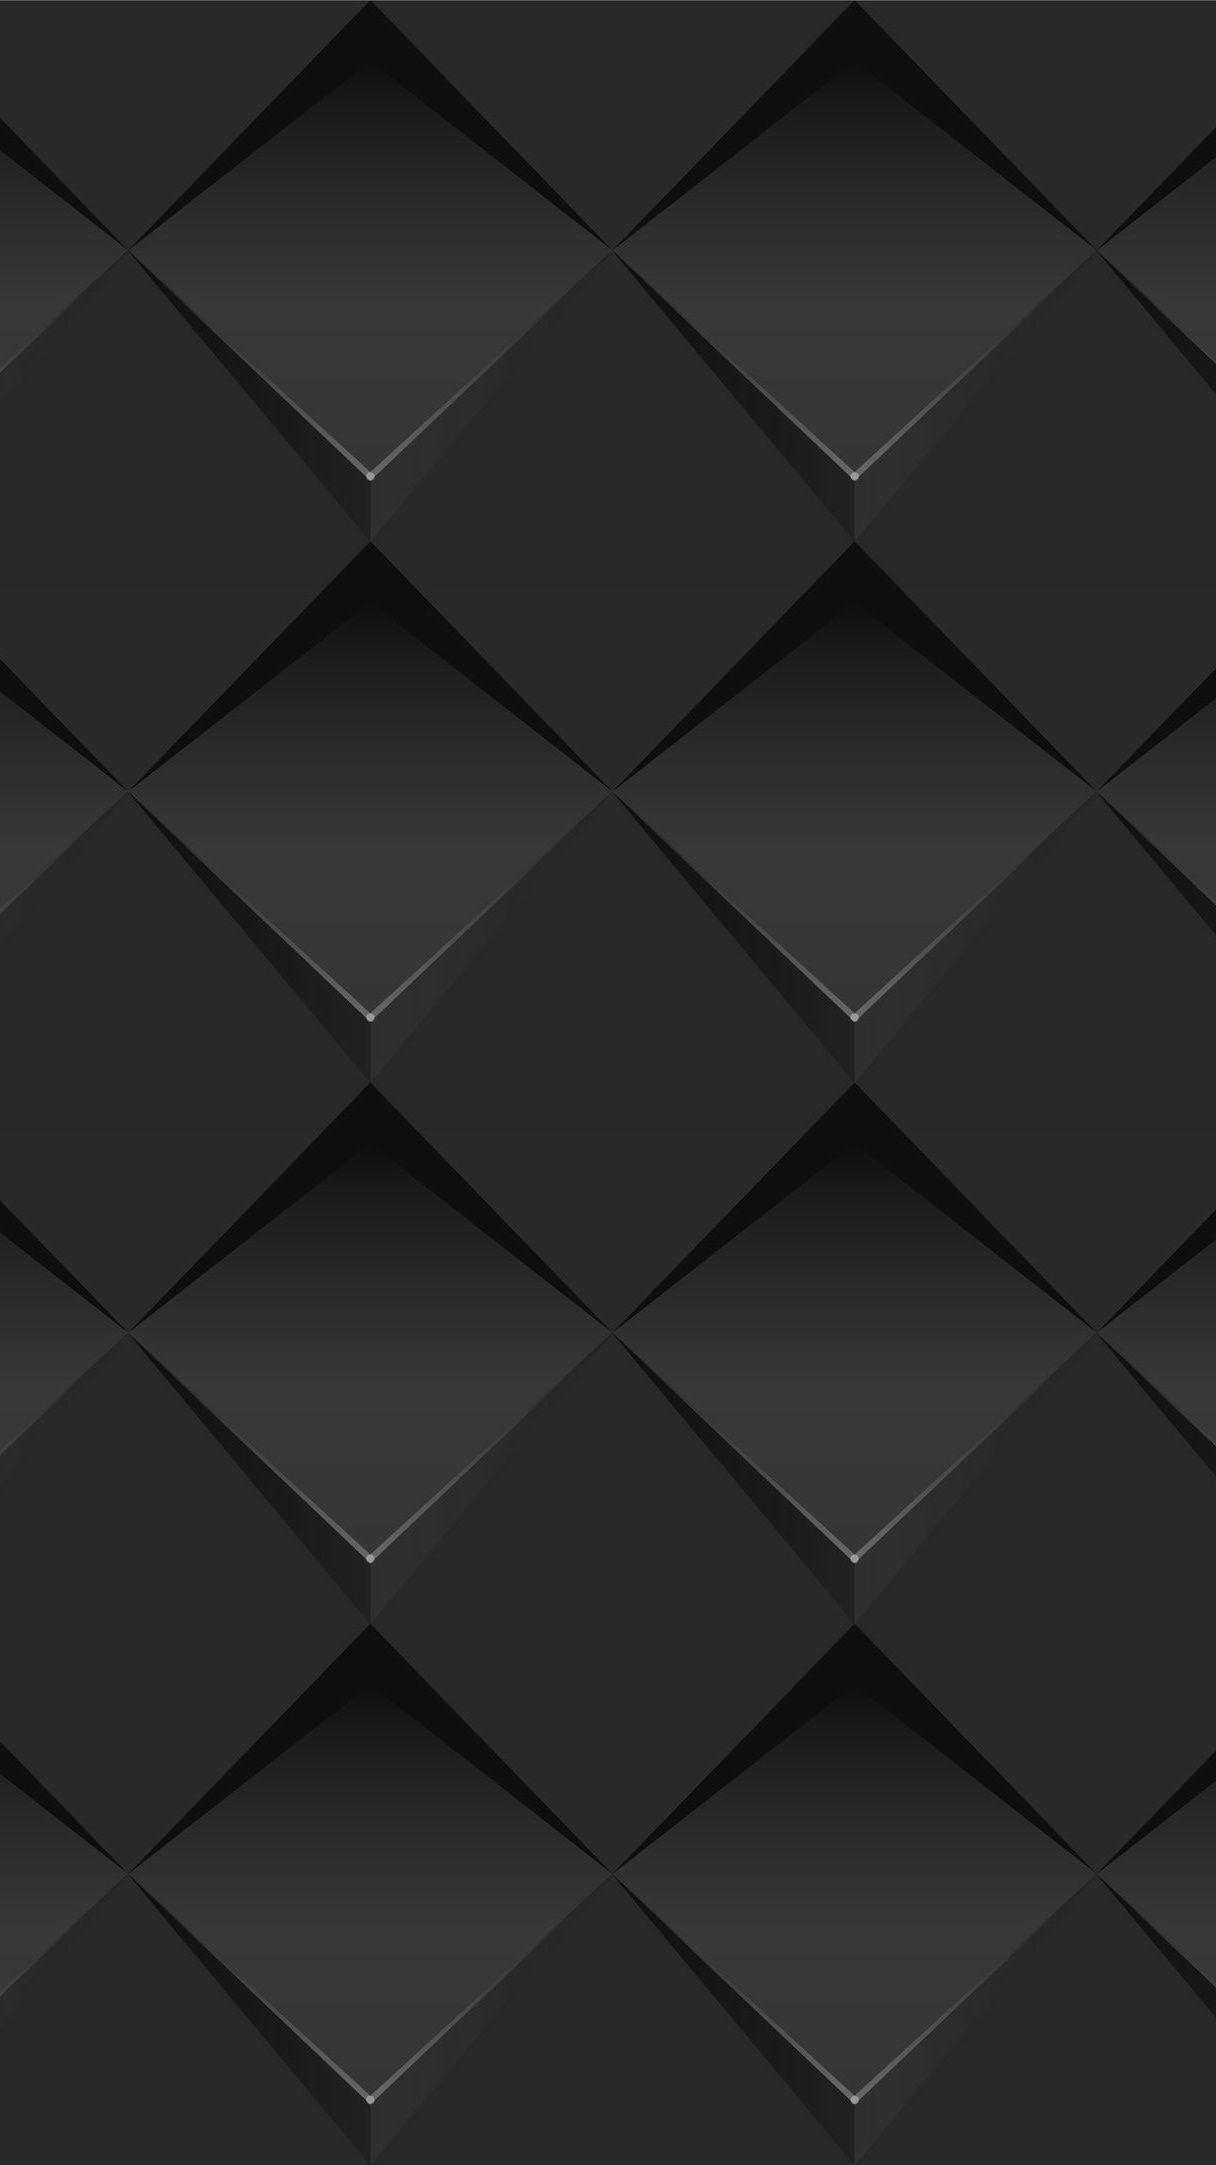 Geometric Dark Wallpapers - Wallpaper Cave